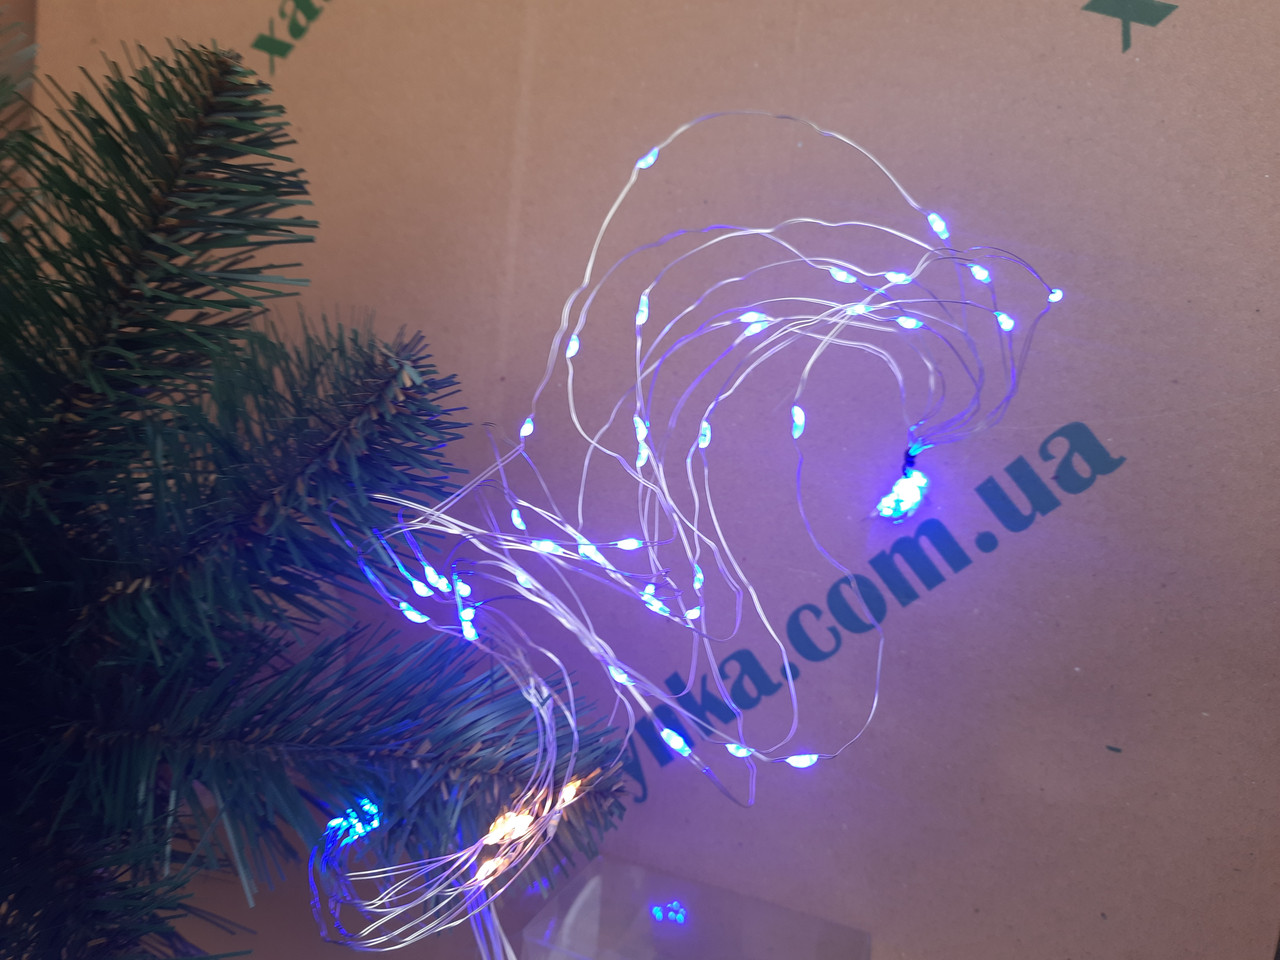 Новорічна світлодіодна гірлянда ПУЧОК-РОСА 200LED, 10 ліній по 2.0 м. синій